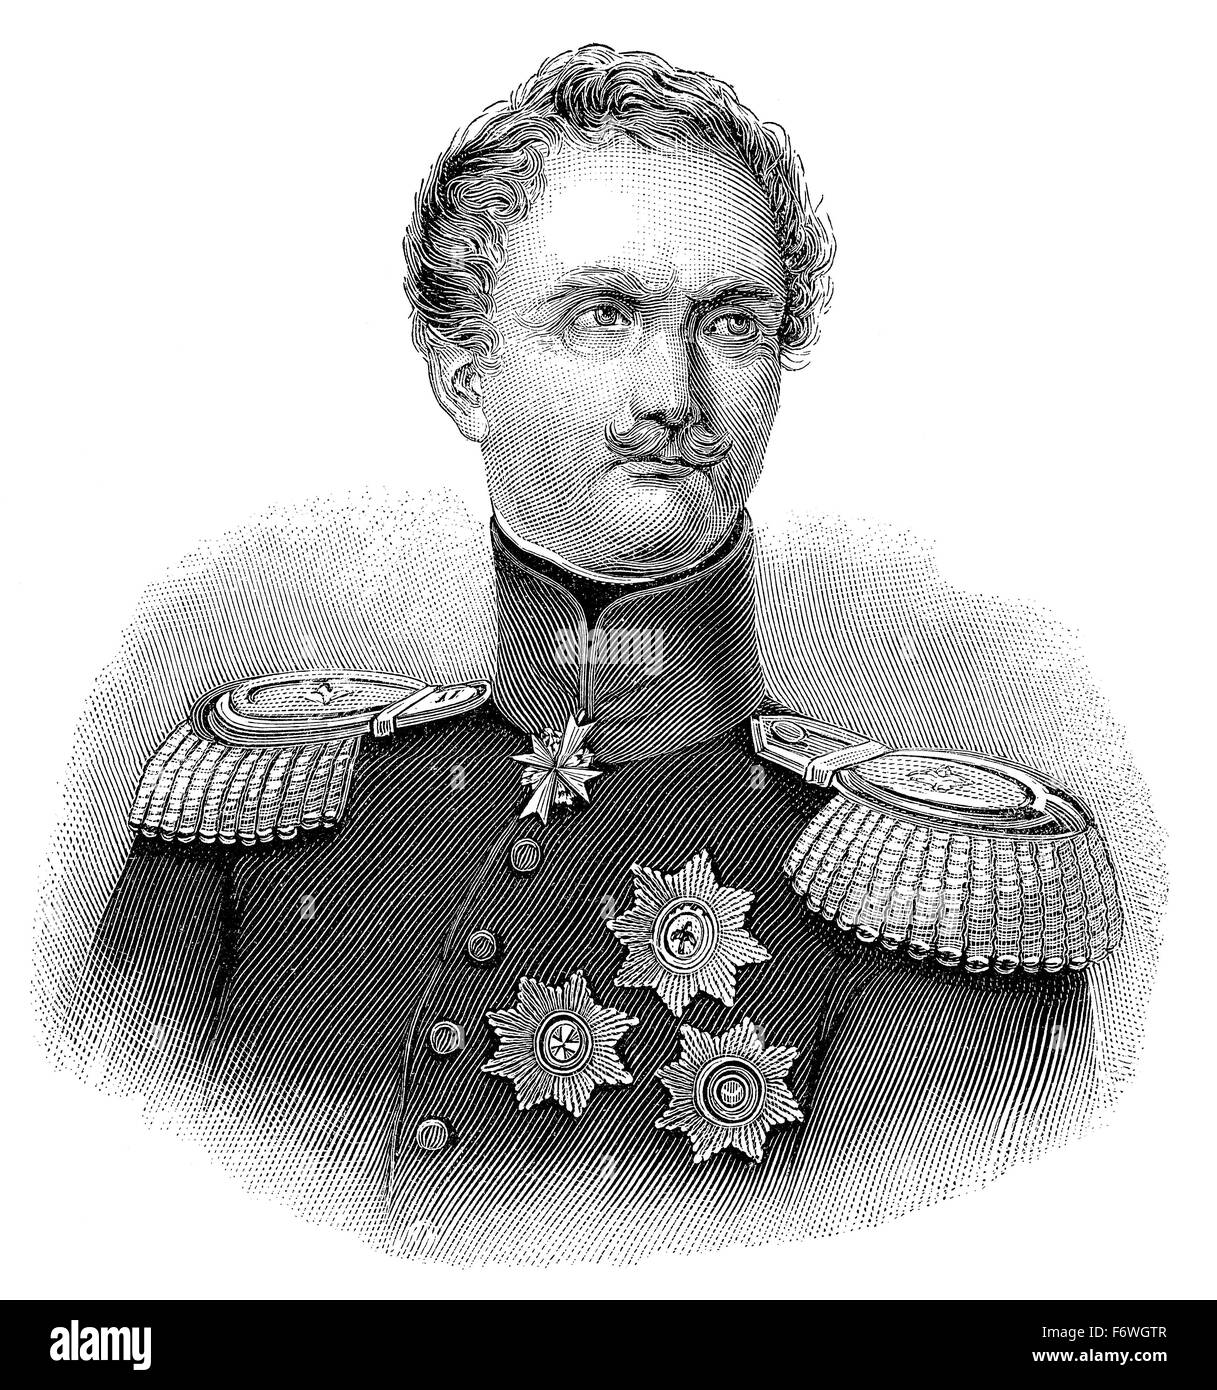 Friedrich Heinrich Ernst Graf von Wrangel, 1784-1877, a Prussian general field marshal, Friedrich Heinrich Ernst Graf von Wrange Stock Photo